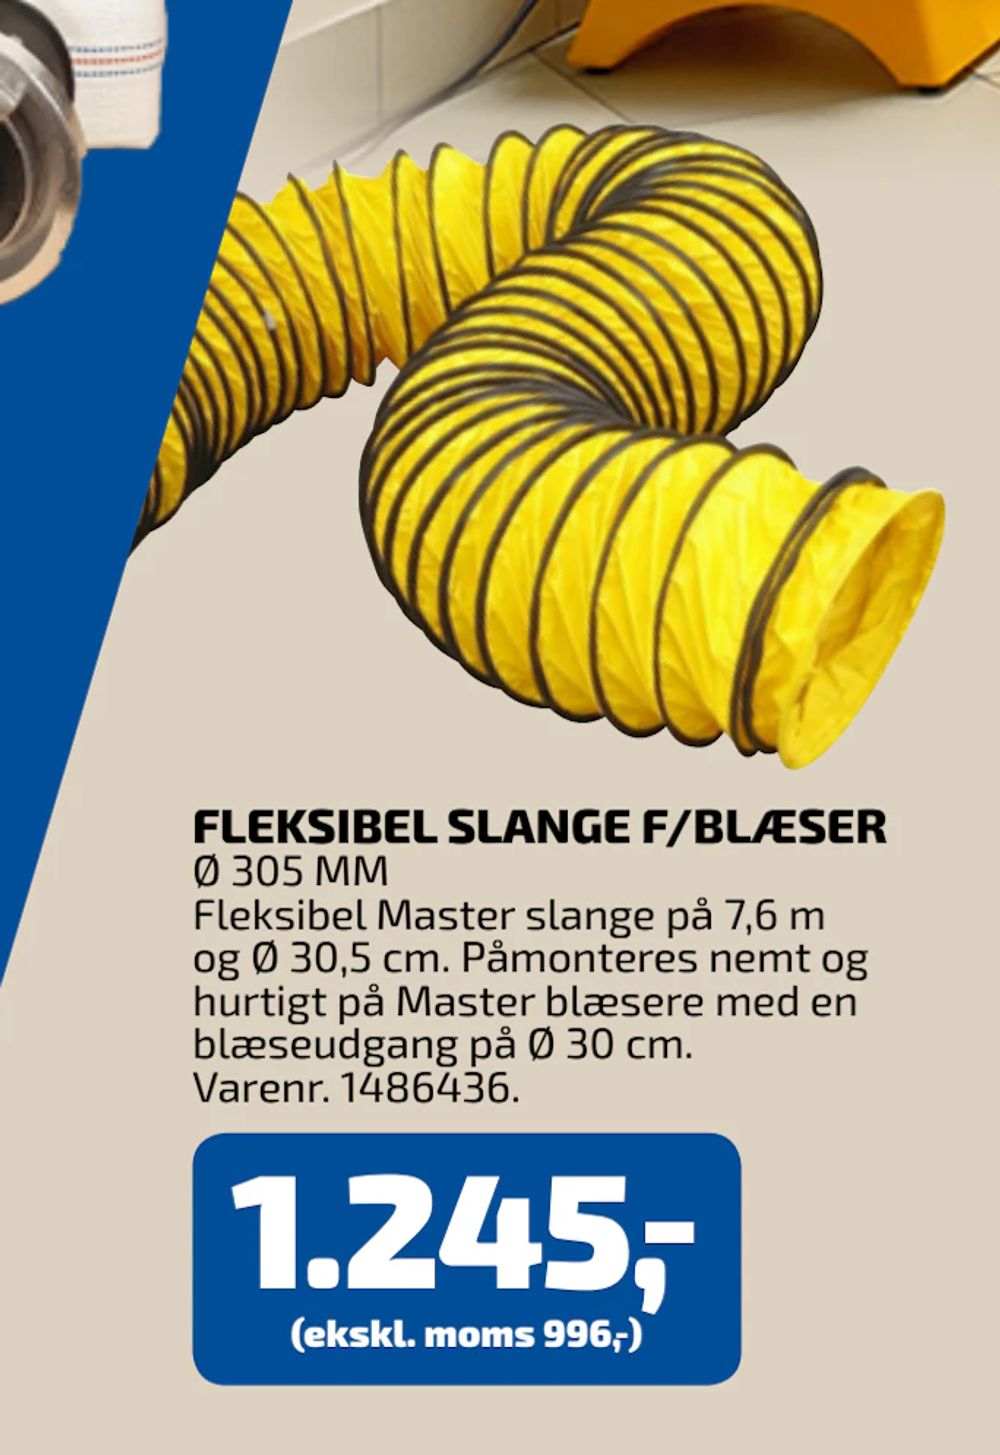 Tilbud på FLEKSIBEL SLANGE F/BLÆSER fra Davidsen til 1.245 kr.